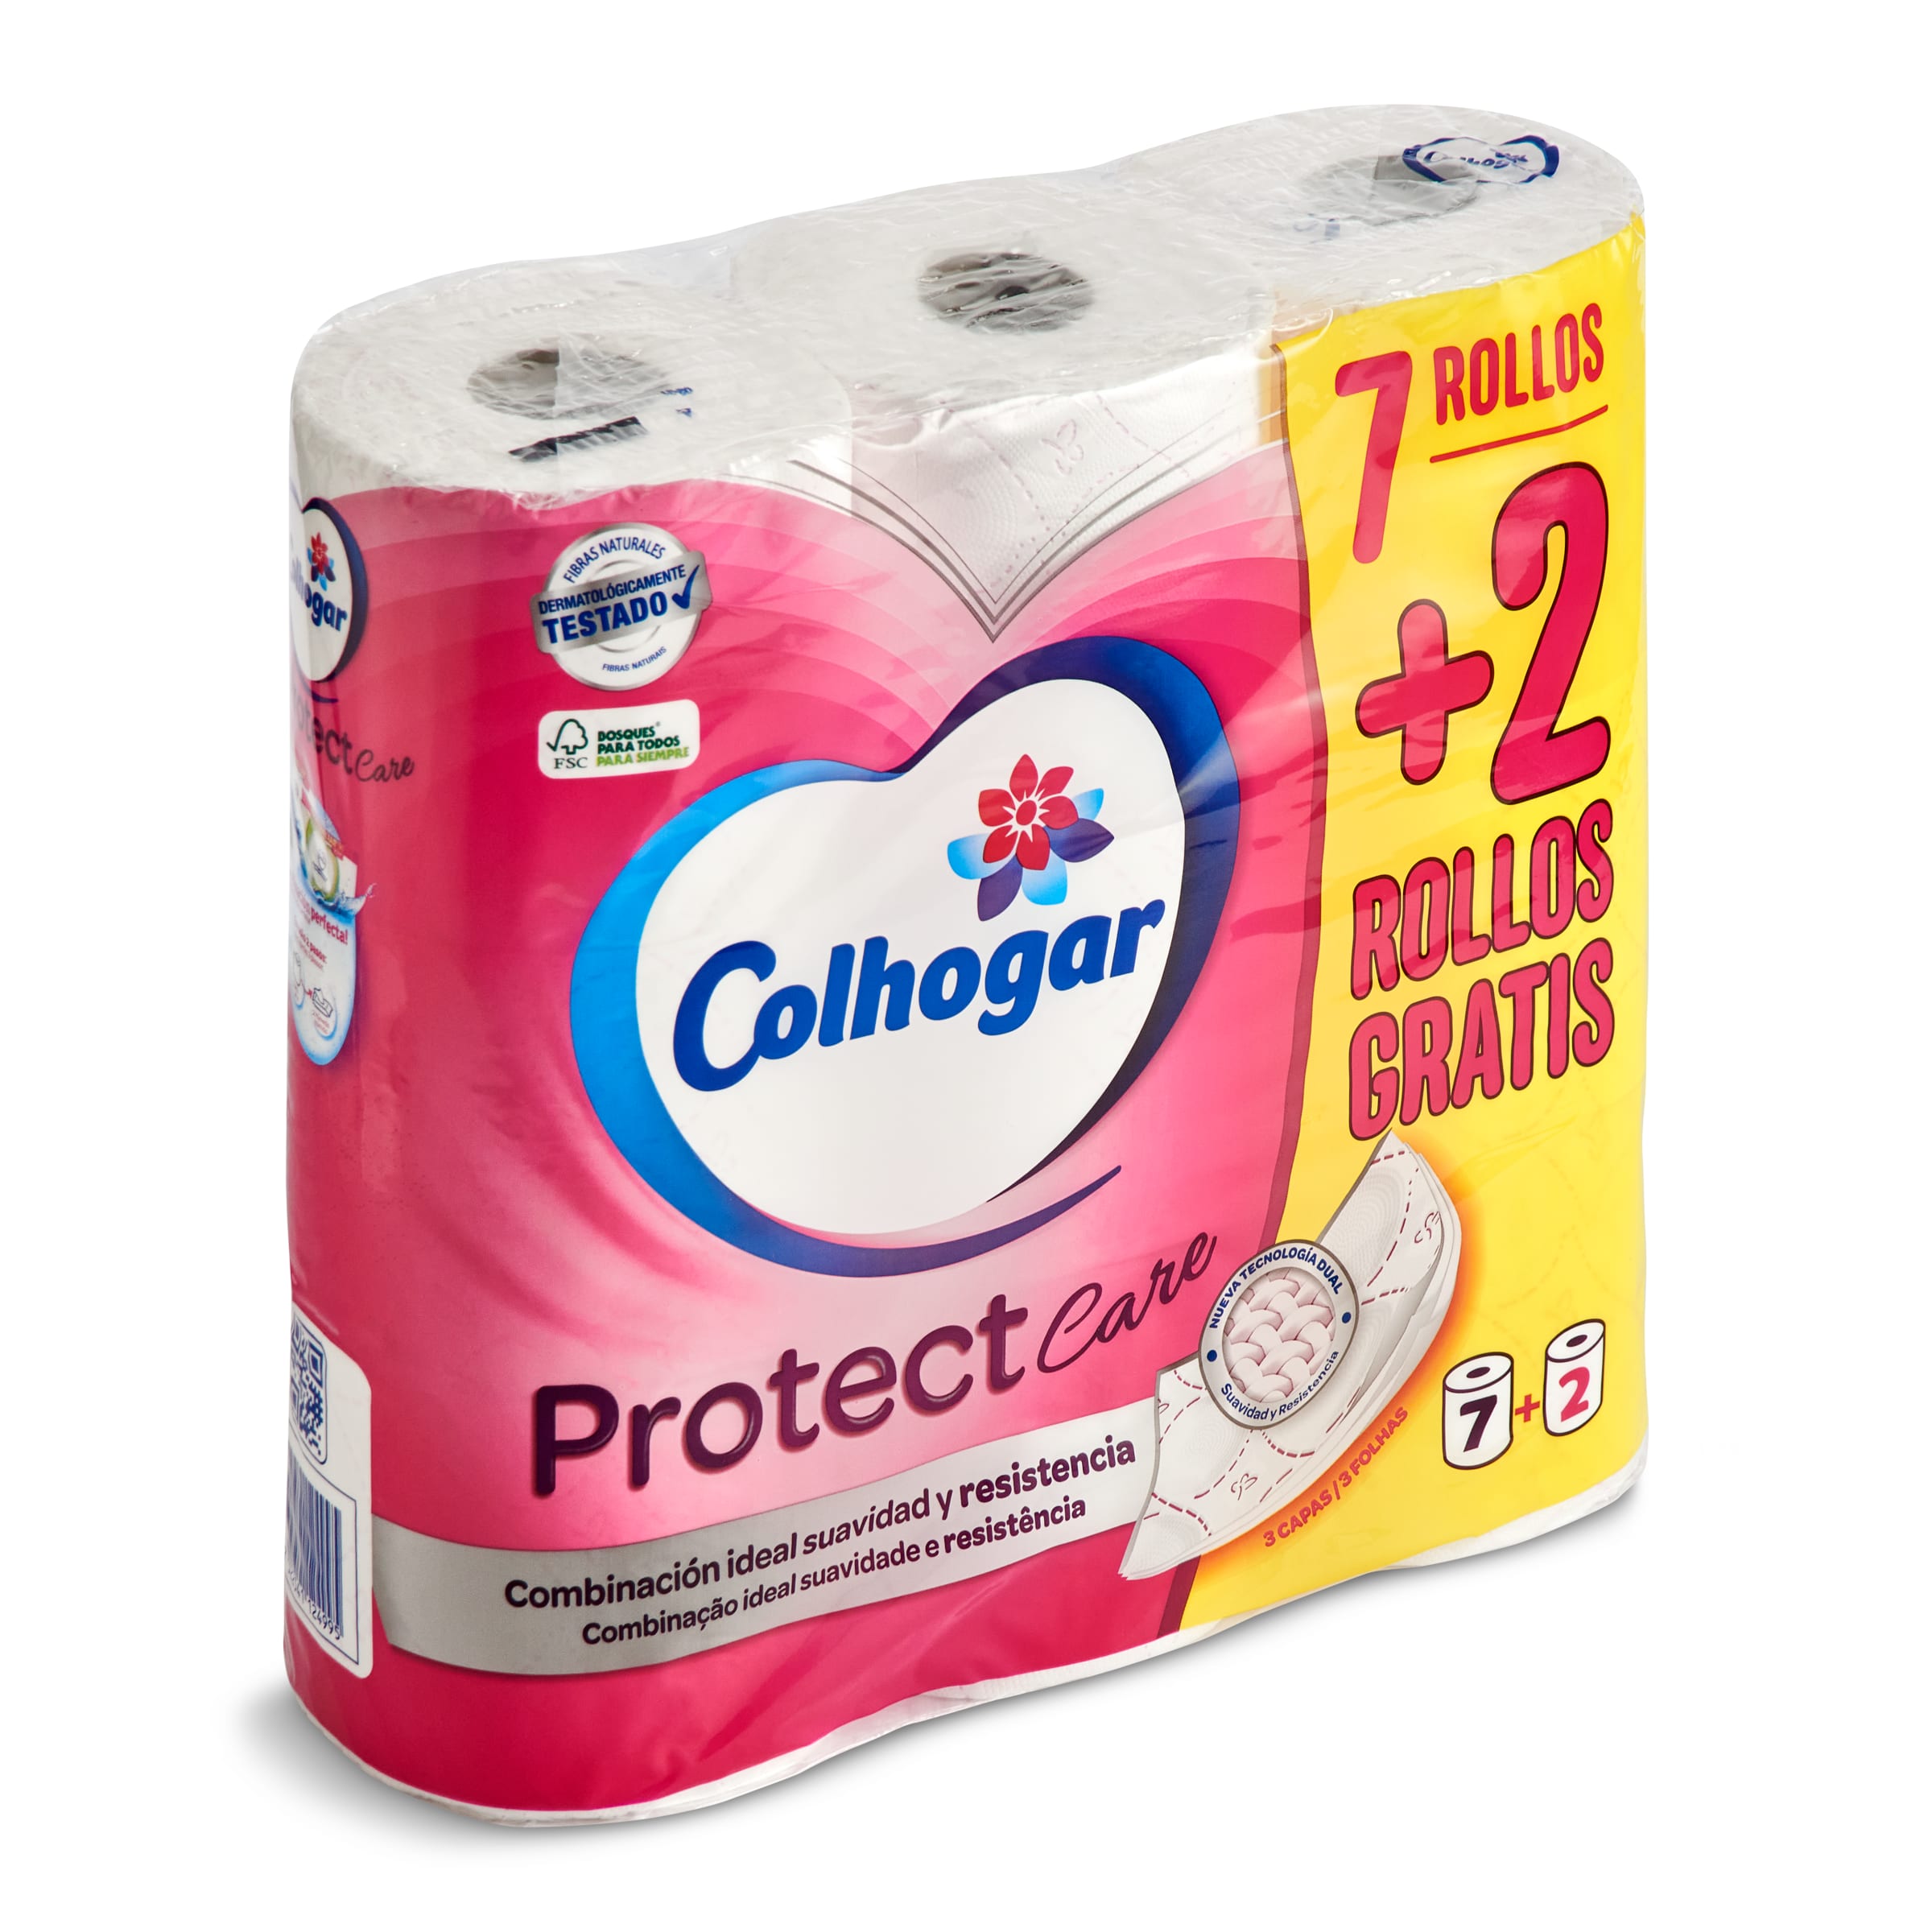 Papel higiénico 3 capas Colhogar Protect Care 18 rollos